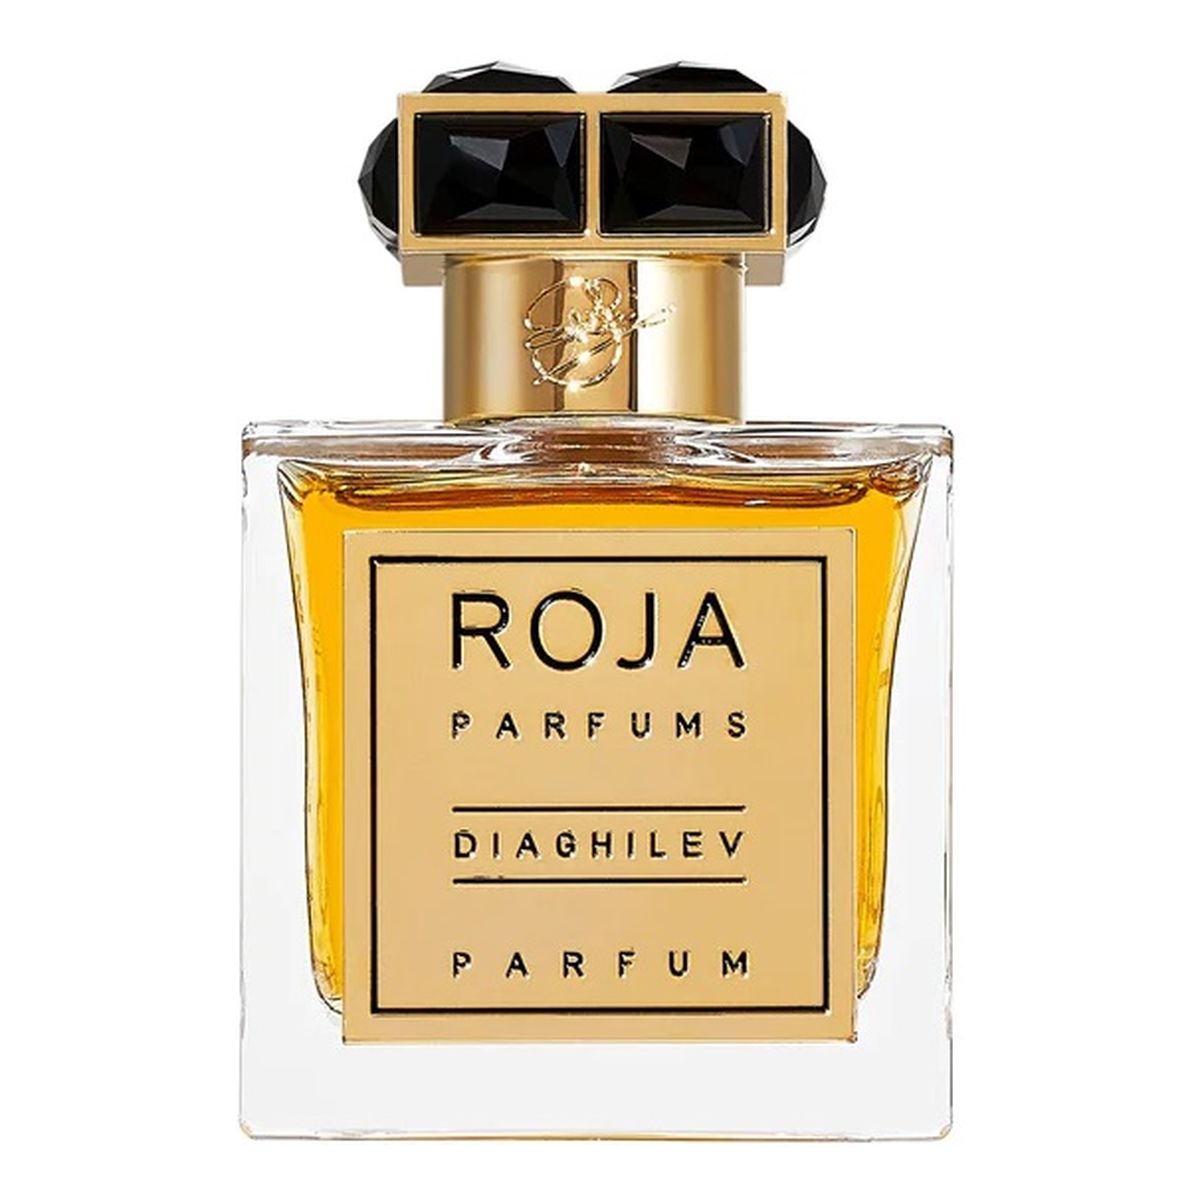 Roja Parfums Diaghilev Perfumy spray 100ml